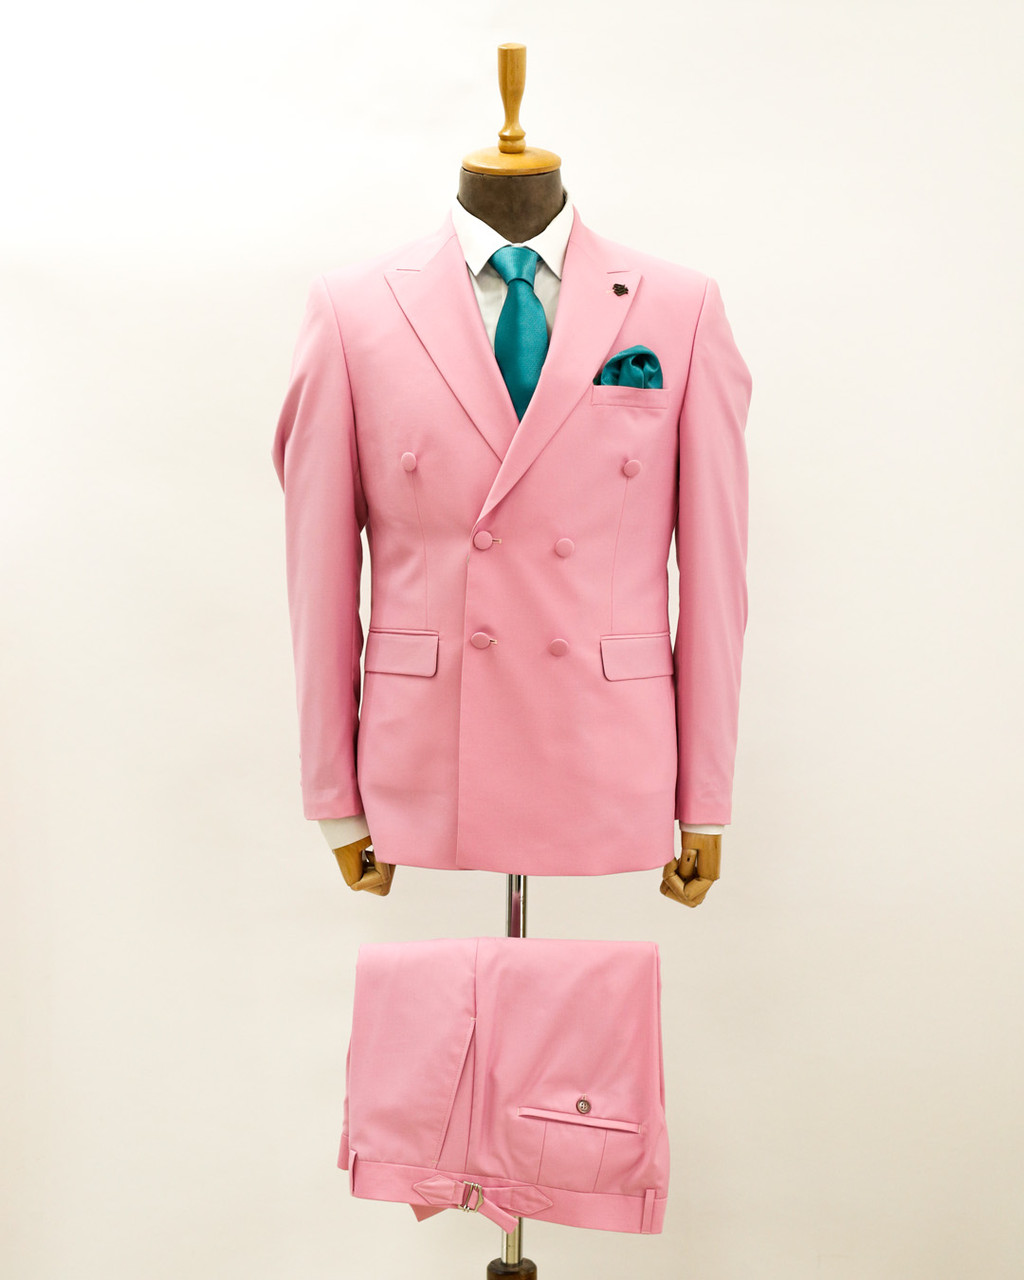 Мужской классический костюм «UM&H 1019227390» розовый, фото 1